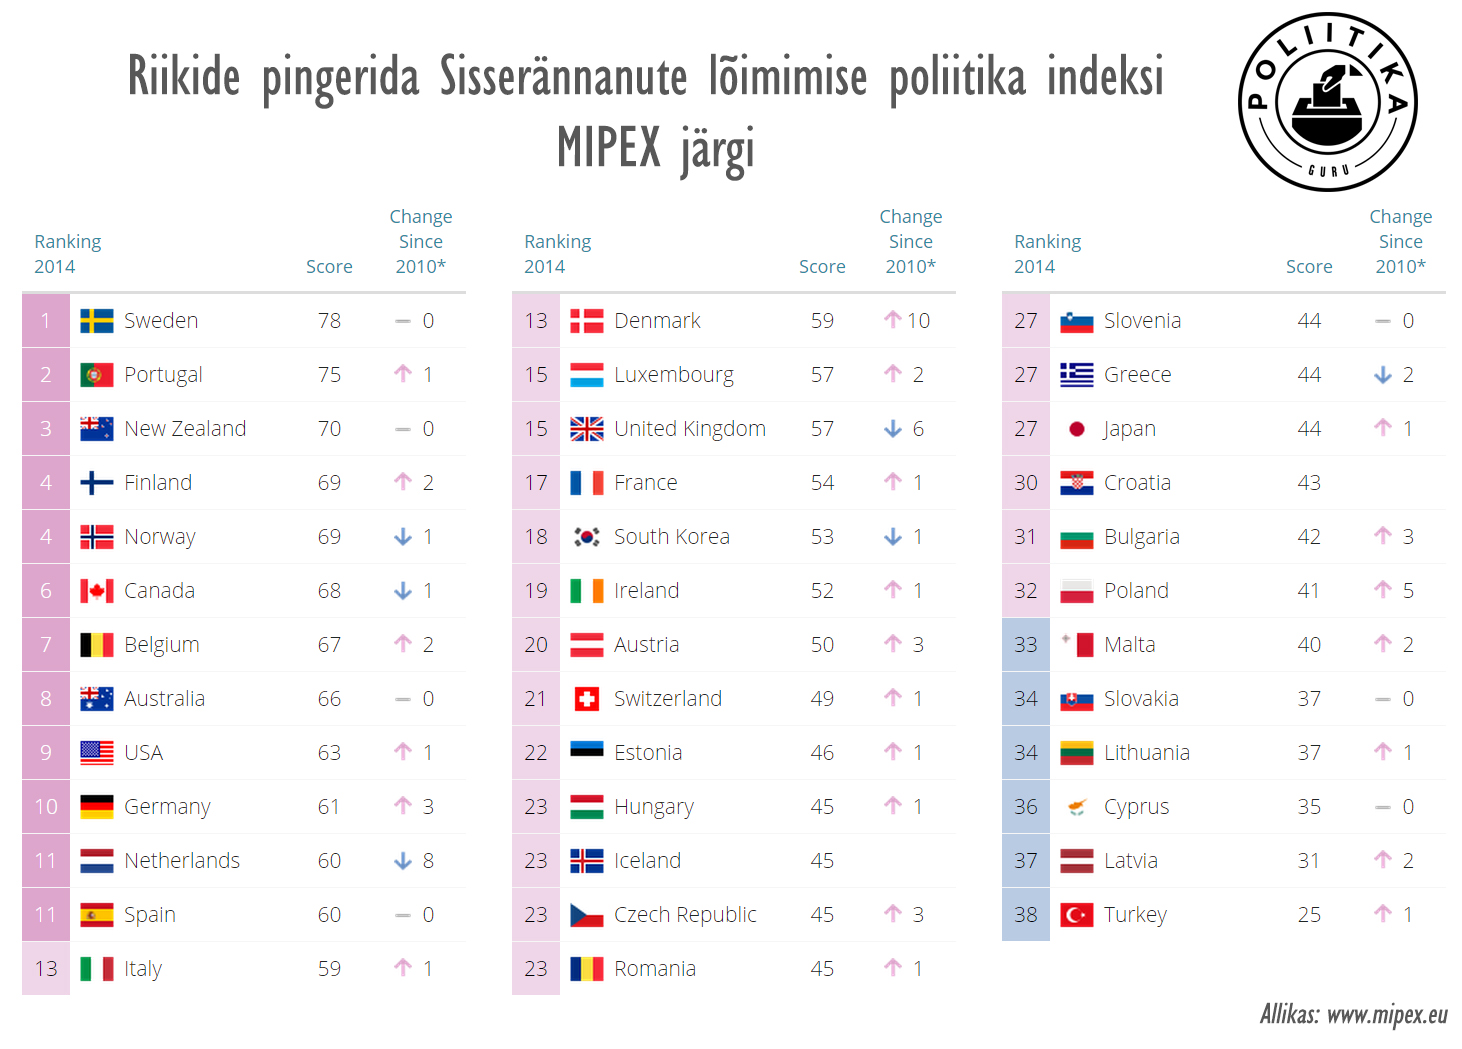 Riikide pingerida indeksi MIPEX järgi